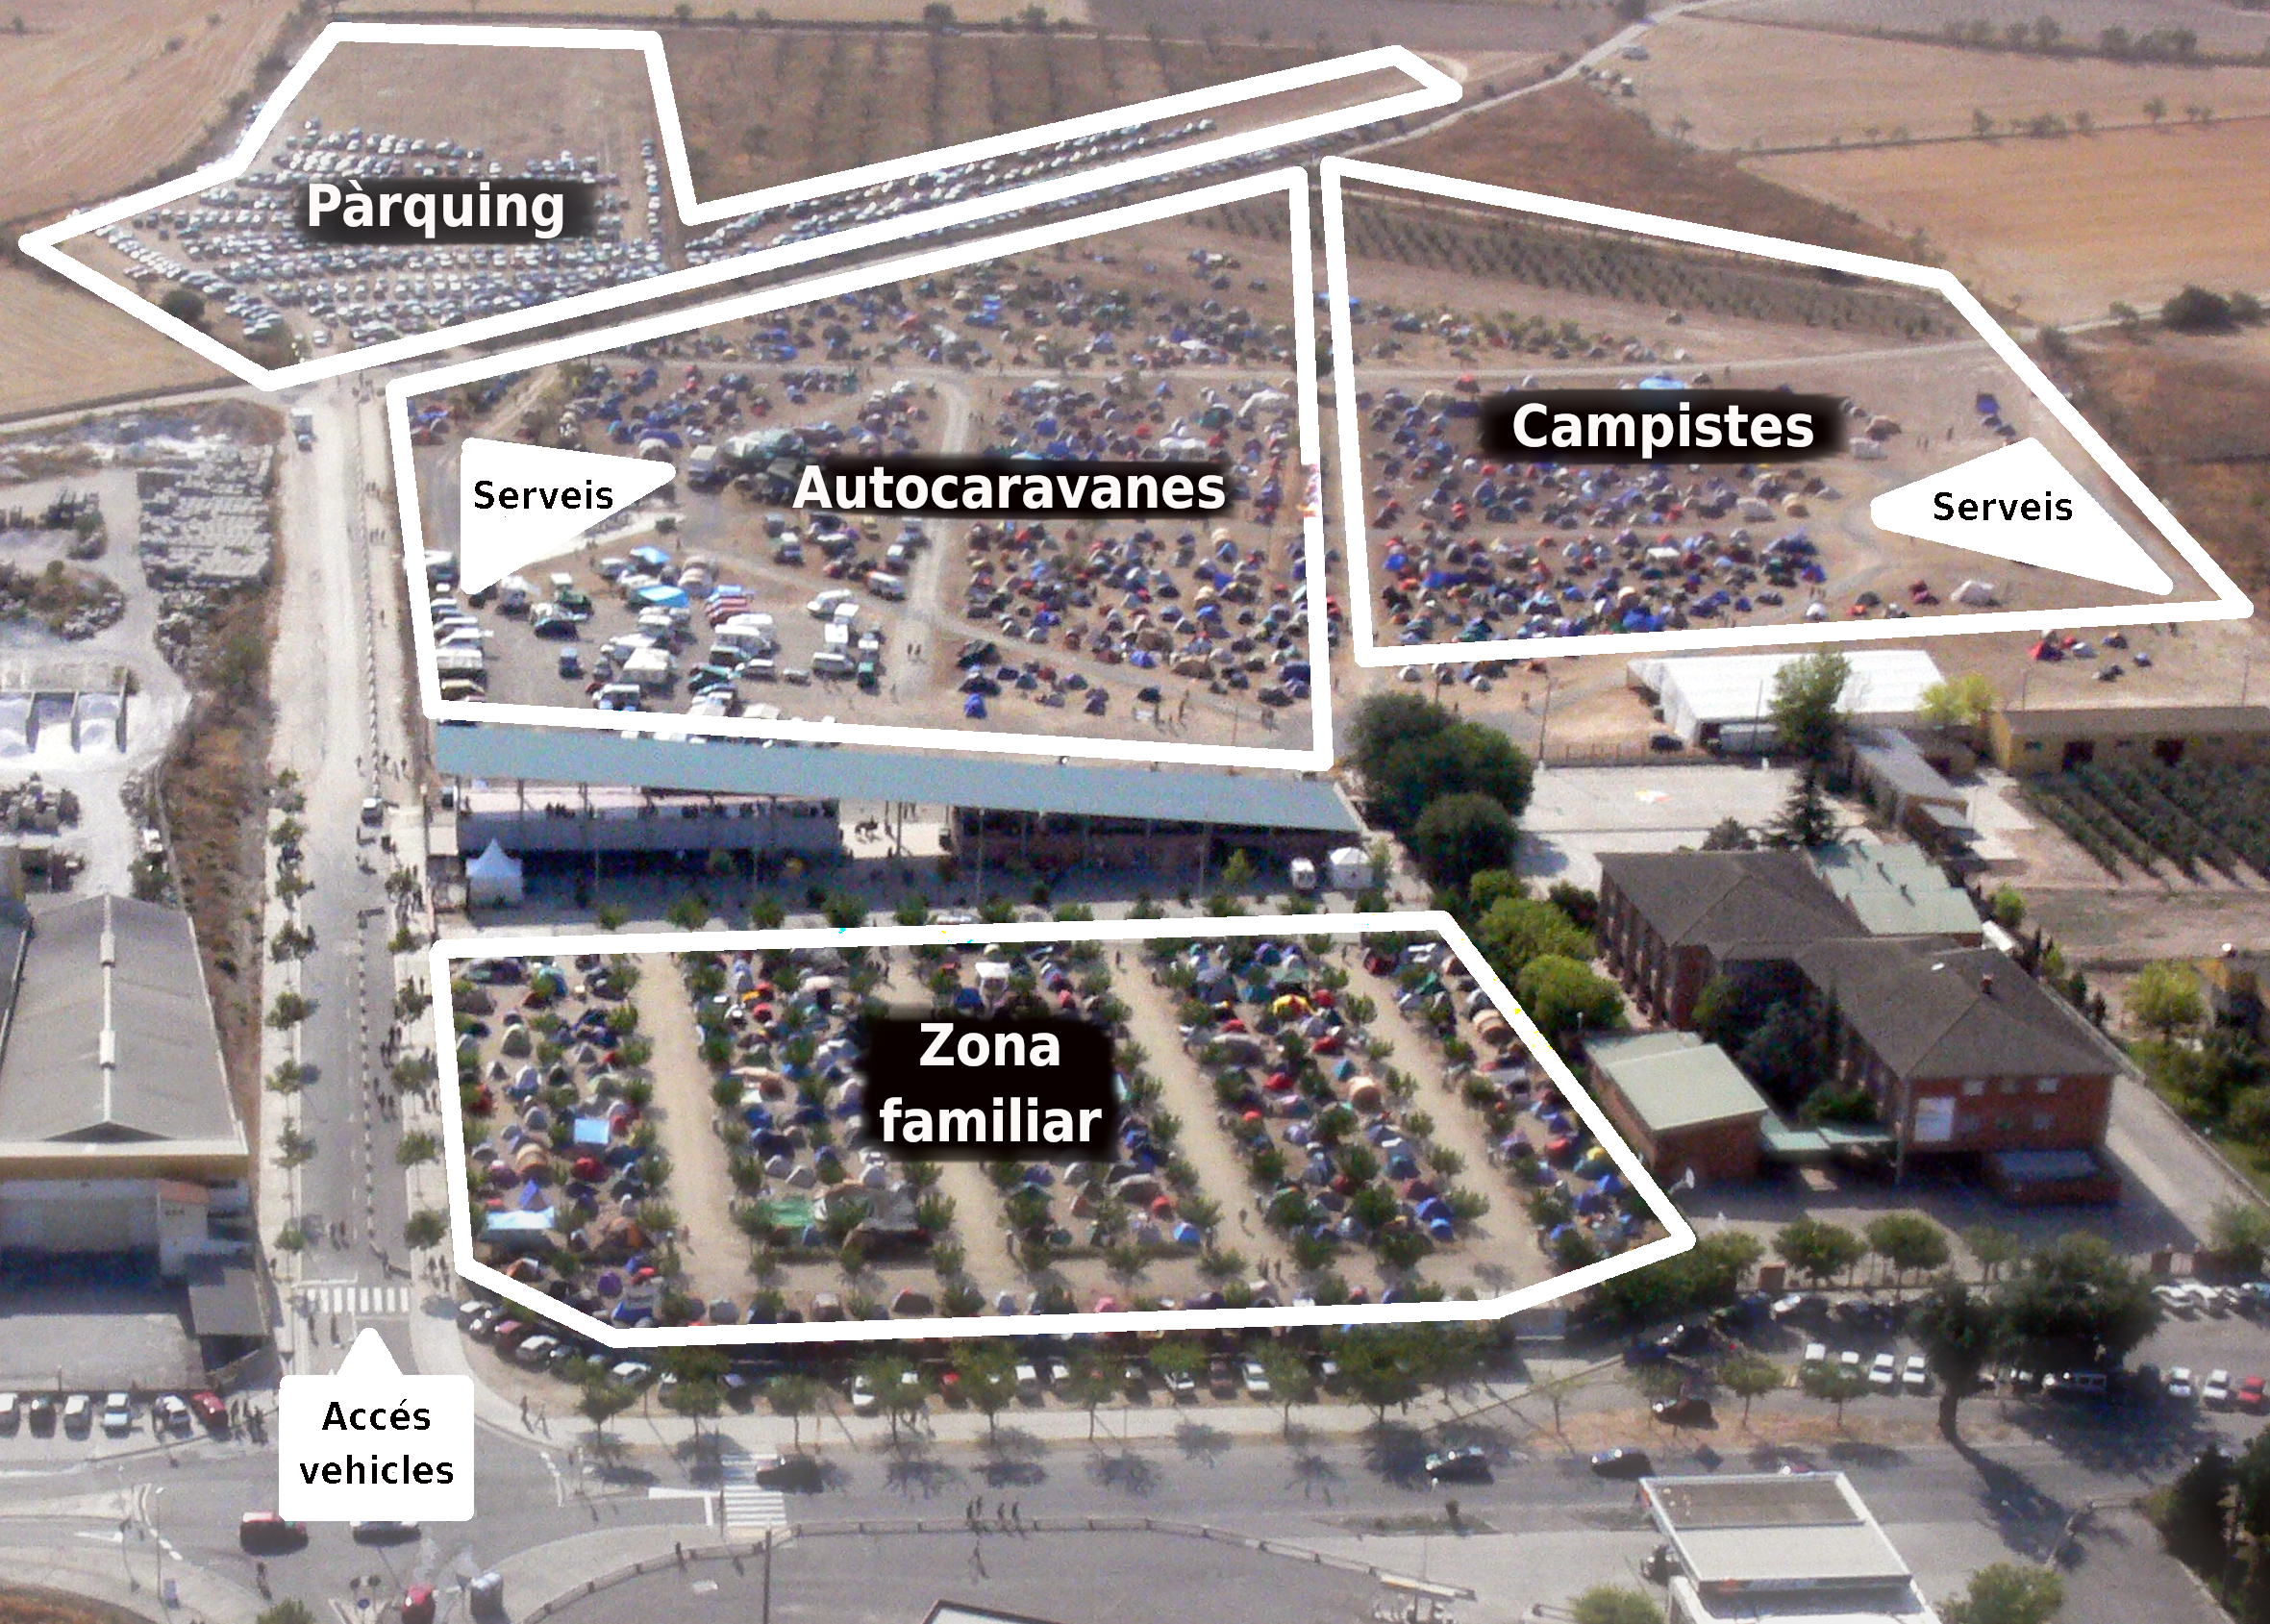 Mapa d'espais i serveis de la zona d'acampada de Firatàrrega